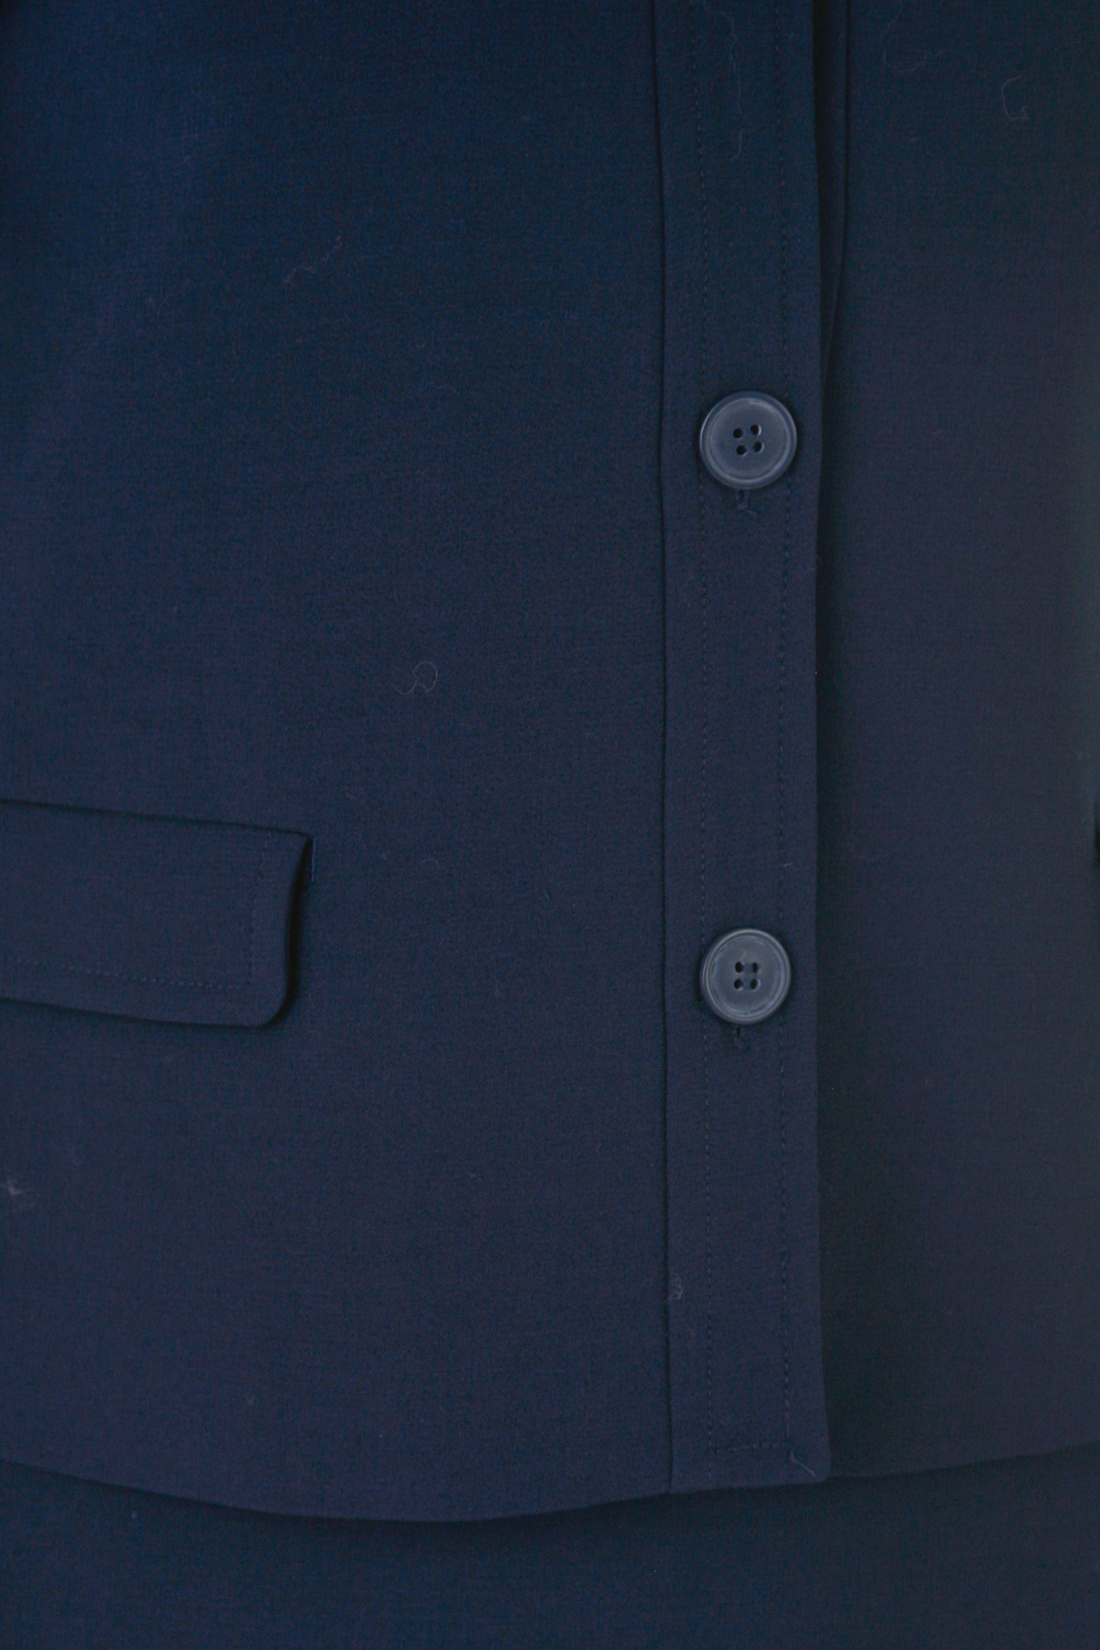 Жакет на пуговицах (арт. baon B128503), размер M, цвет синий Жакет на пуговицах (арт. baon B128503) - фото 4